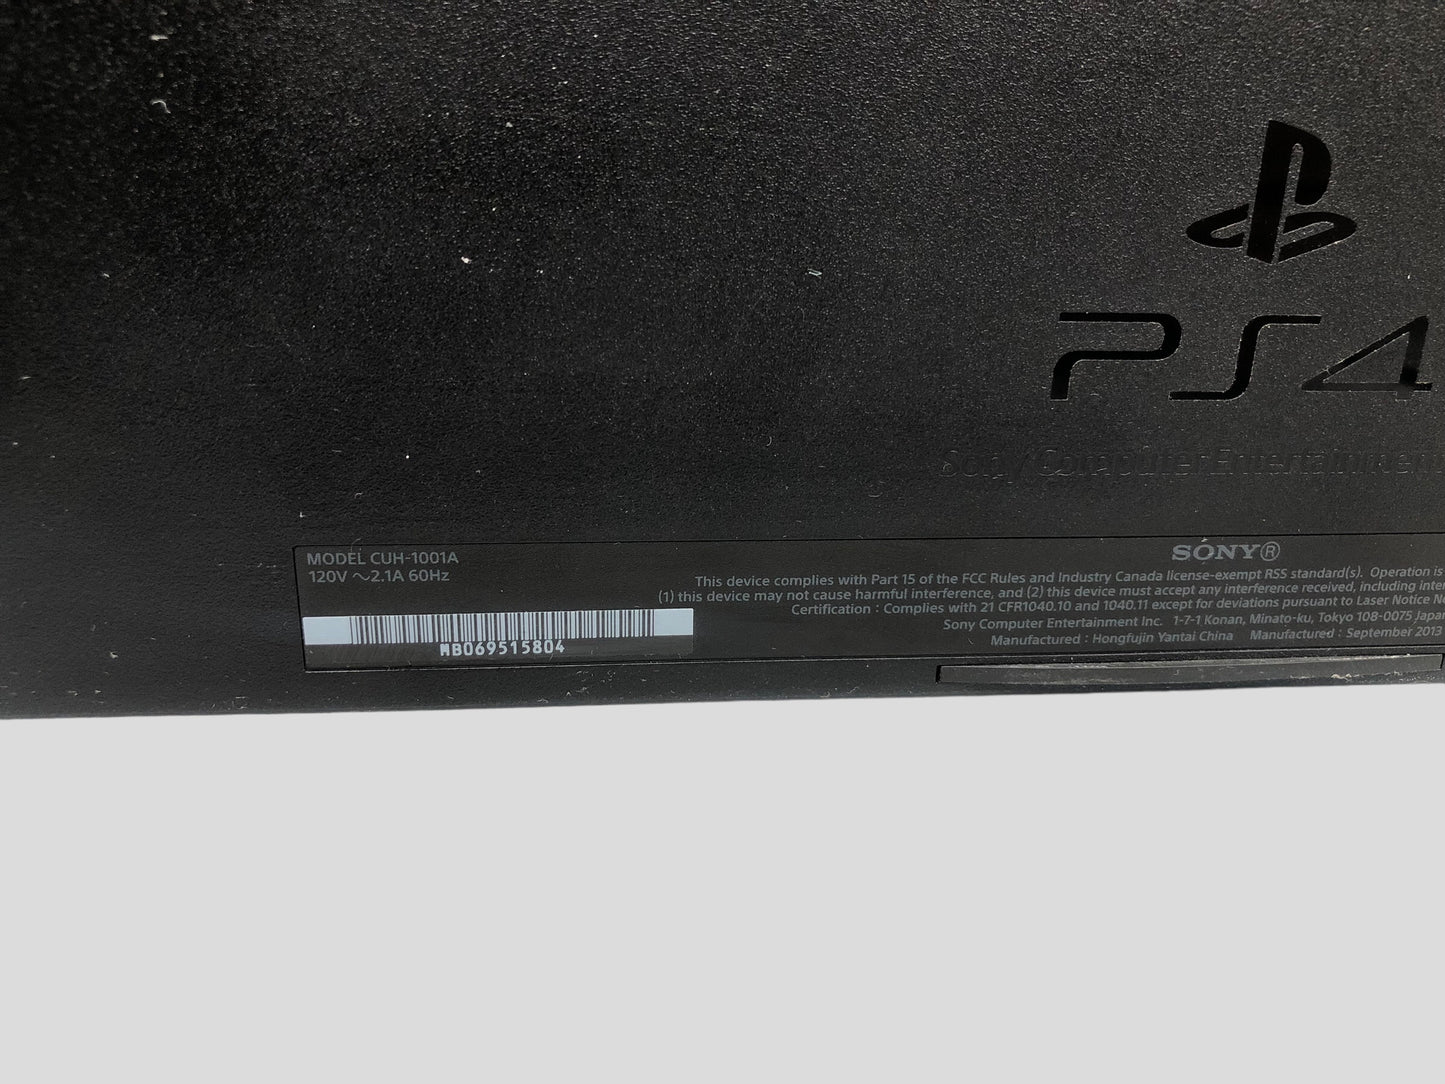 Sony Regular PlayStation 4 Slim CUH-1001A 500GB